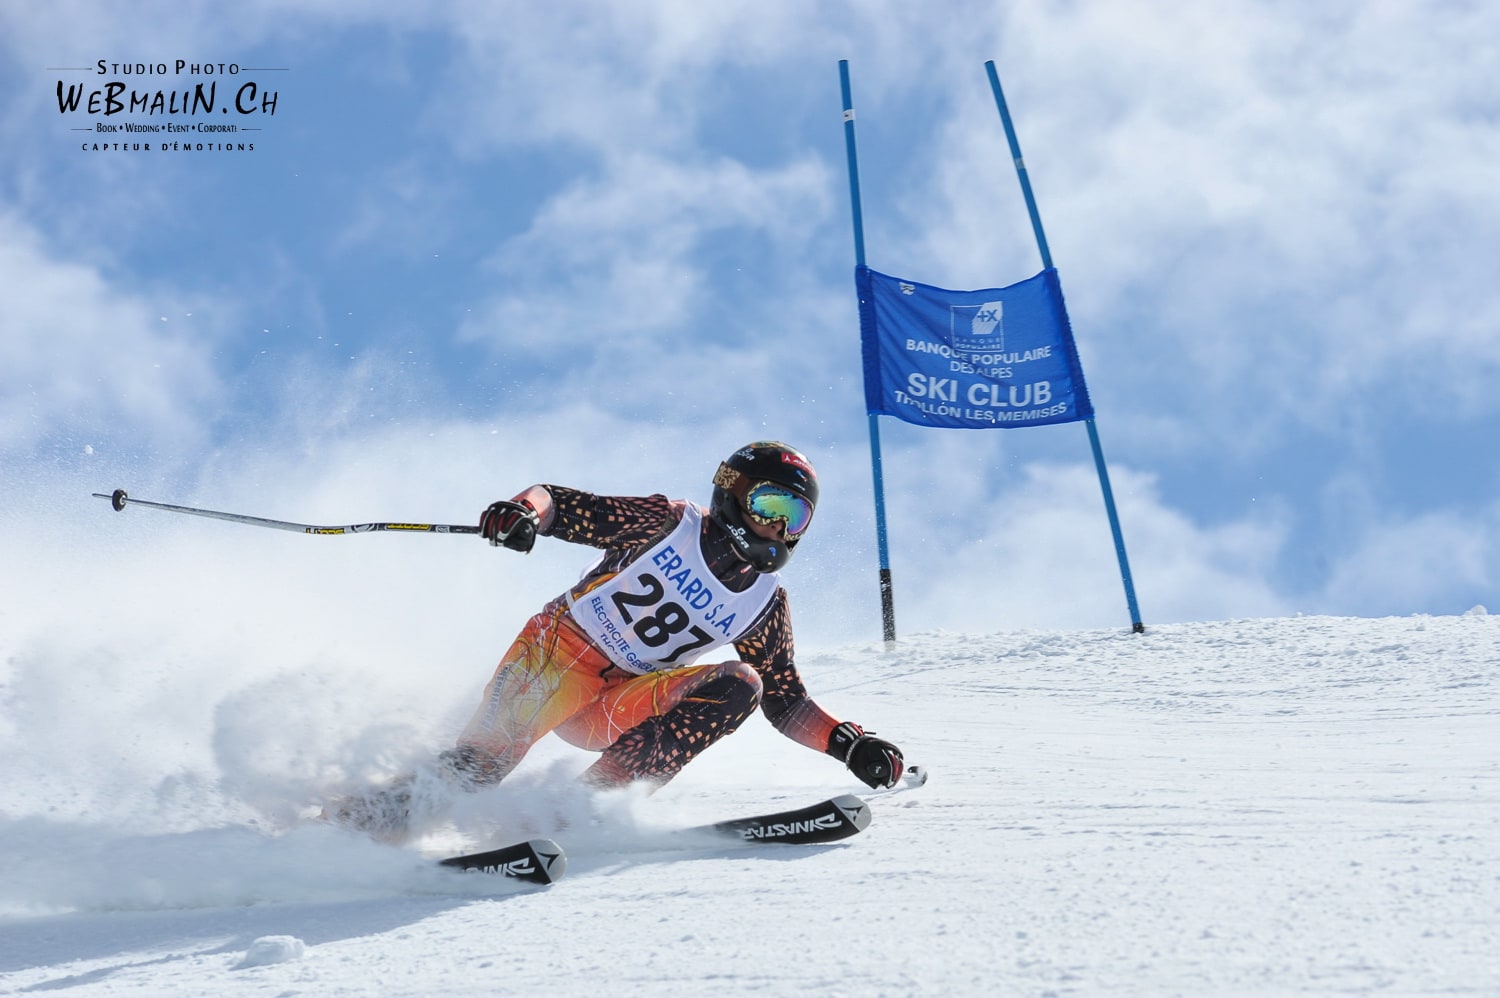 Competition Ski Club Thollon Les Memises - 1197-1